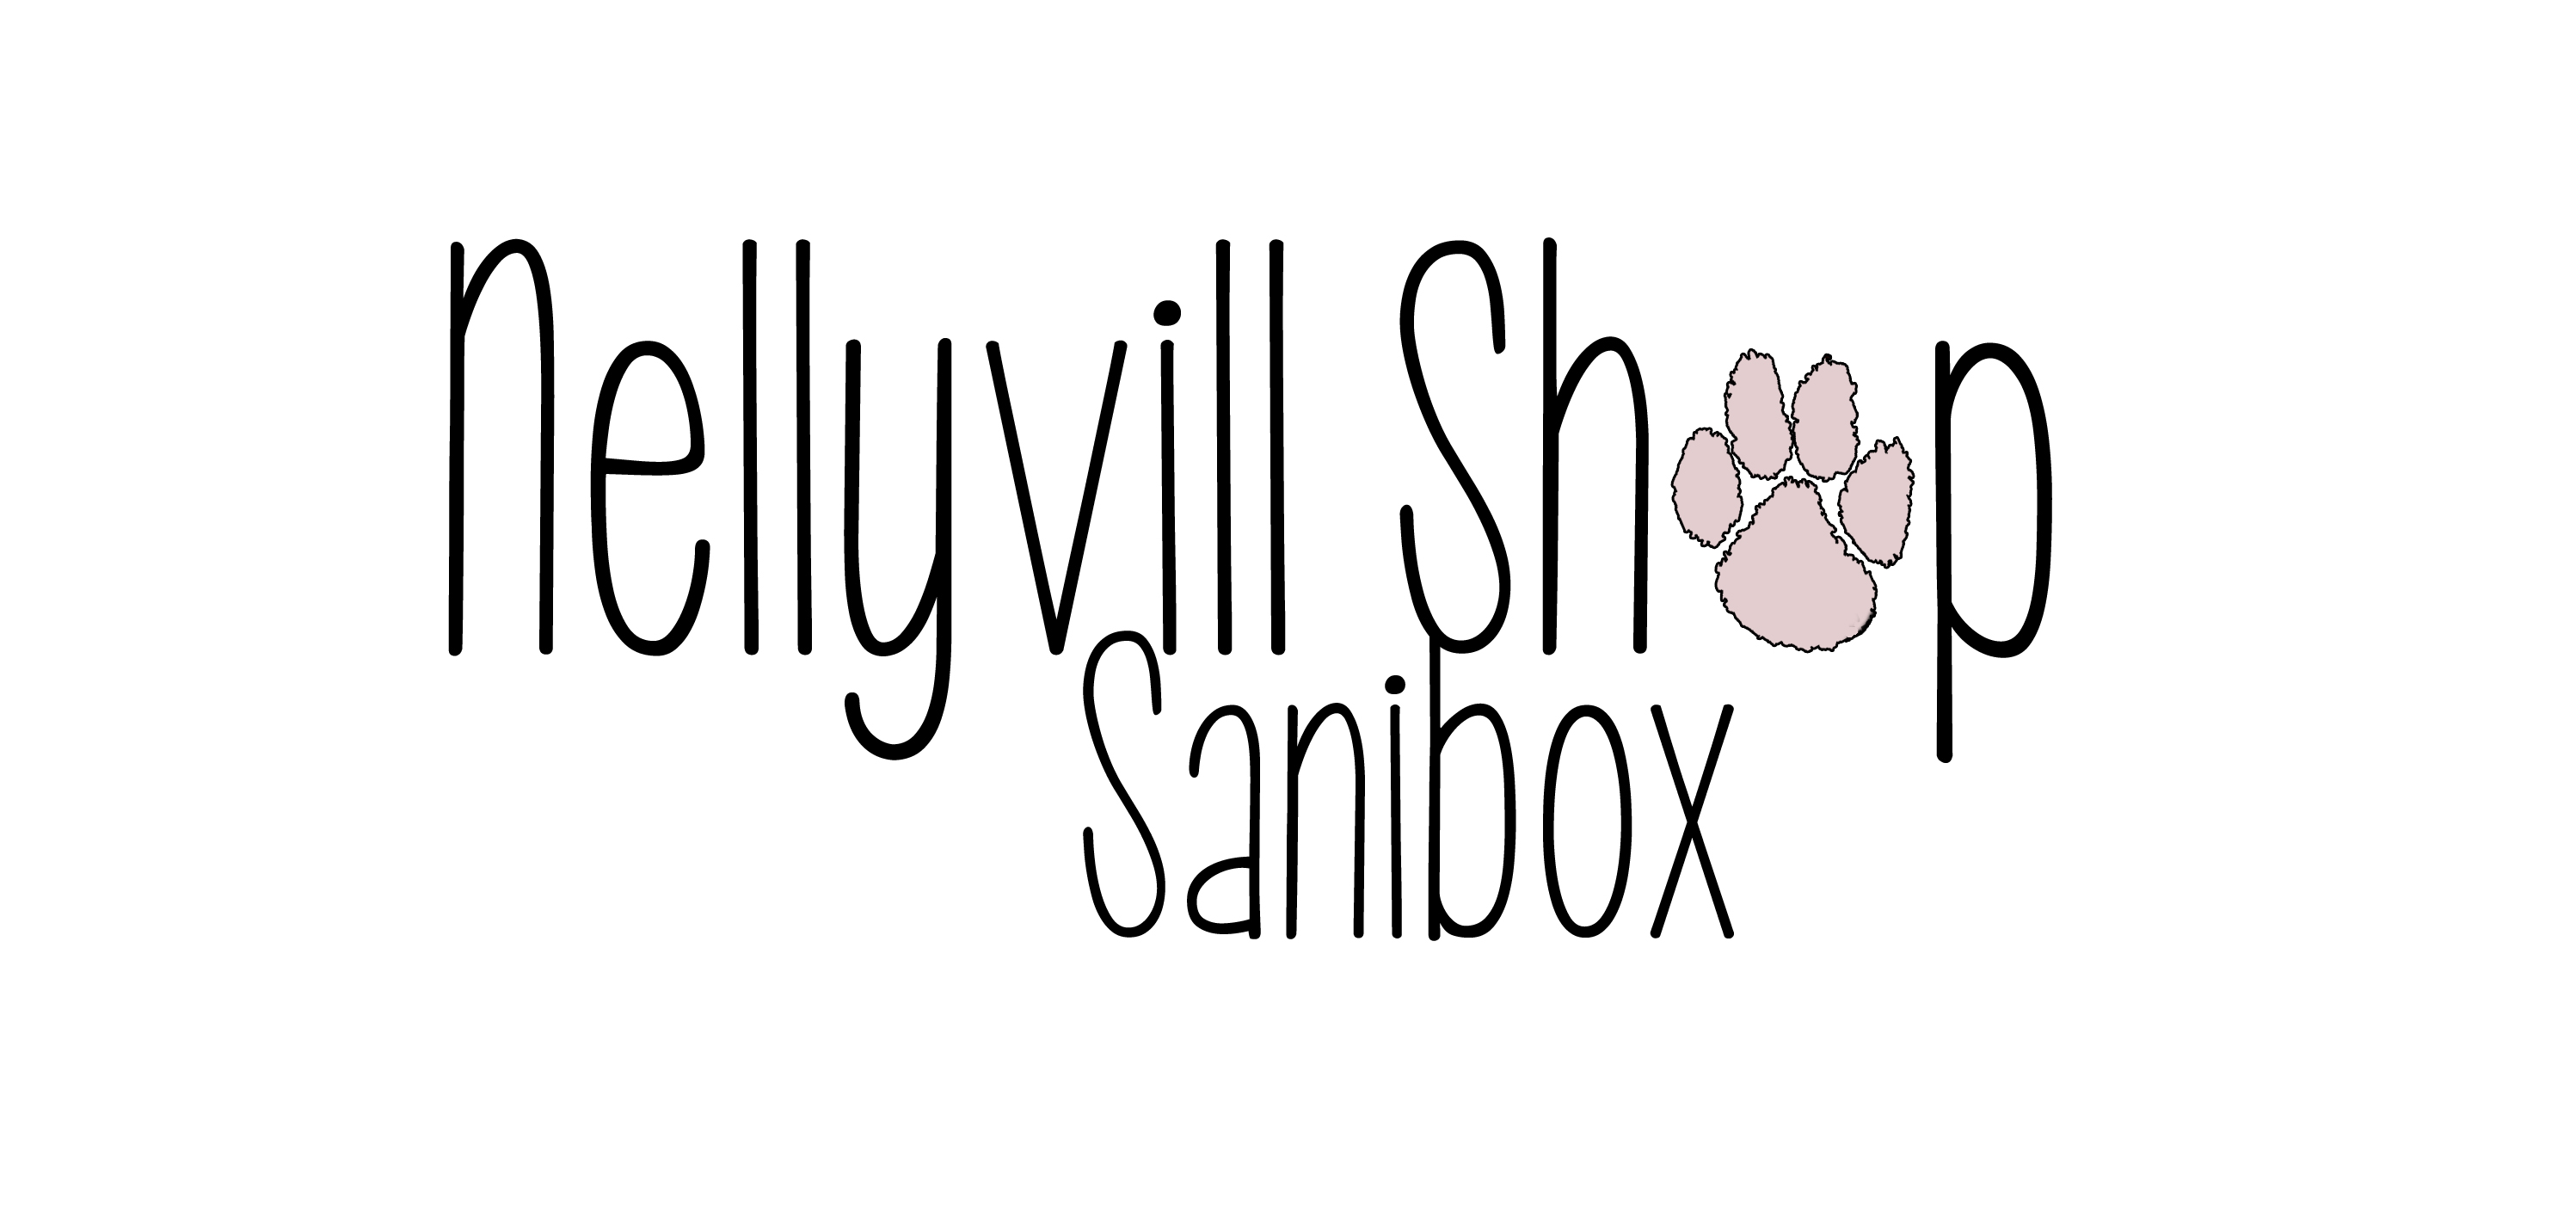 Nellyvill Shop